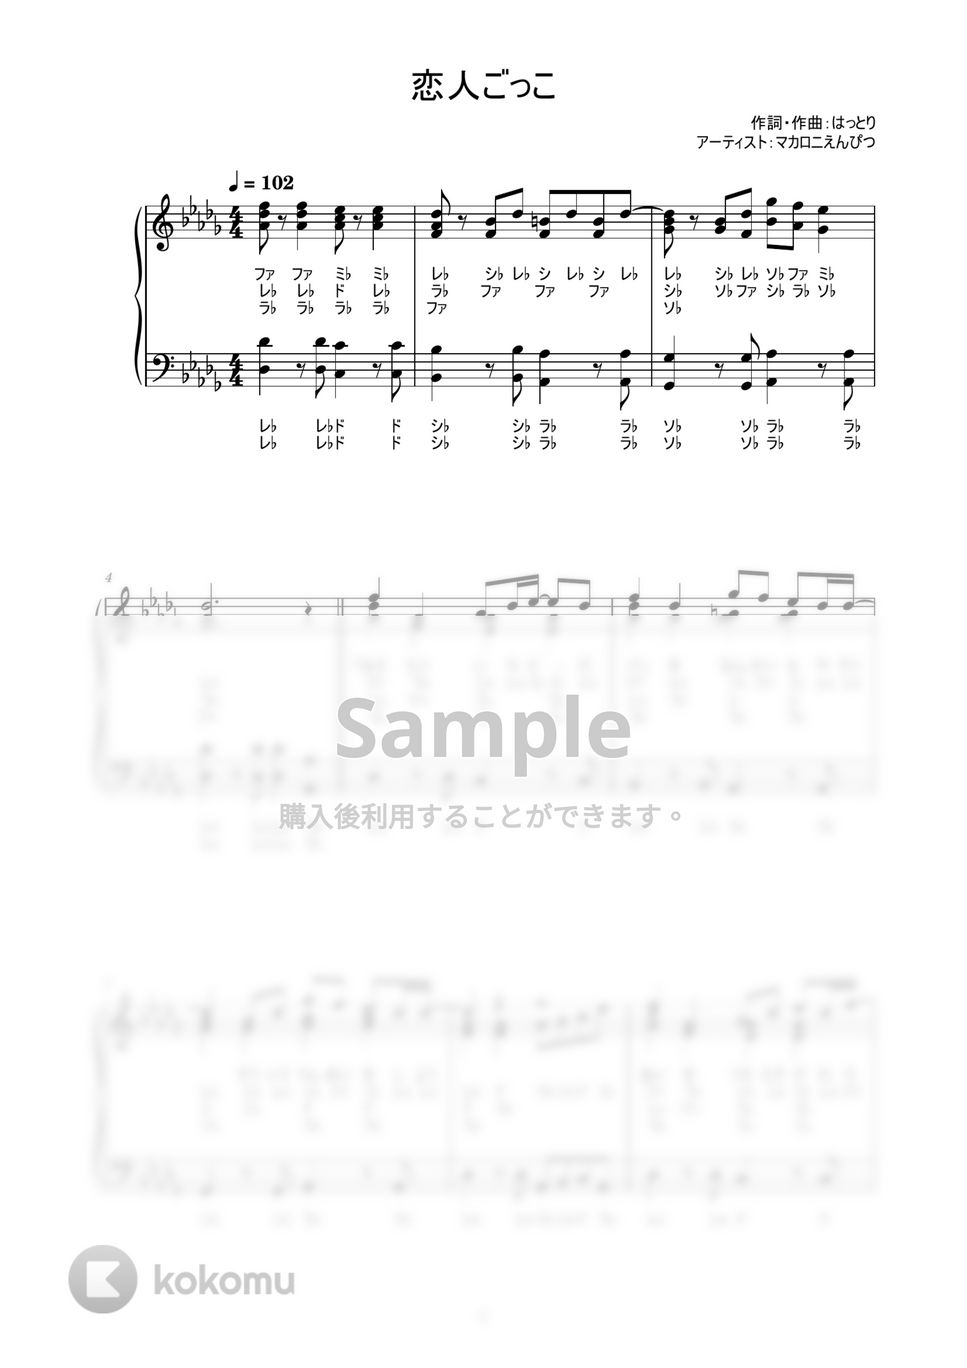 マカロニえんぴつ - 恋人ごっこ (歌詞付き / ドレミ付き / 中級者) by piano.tokyo